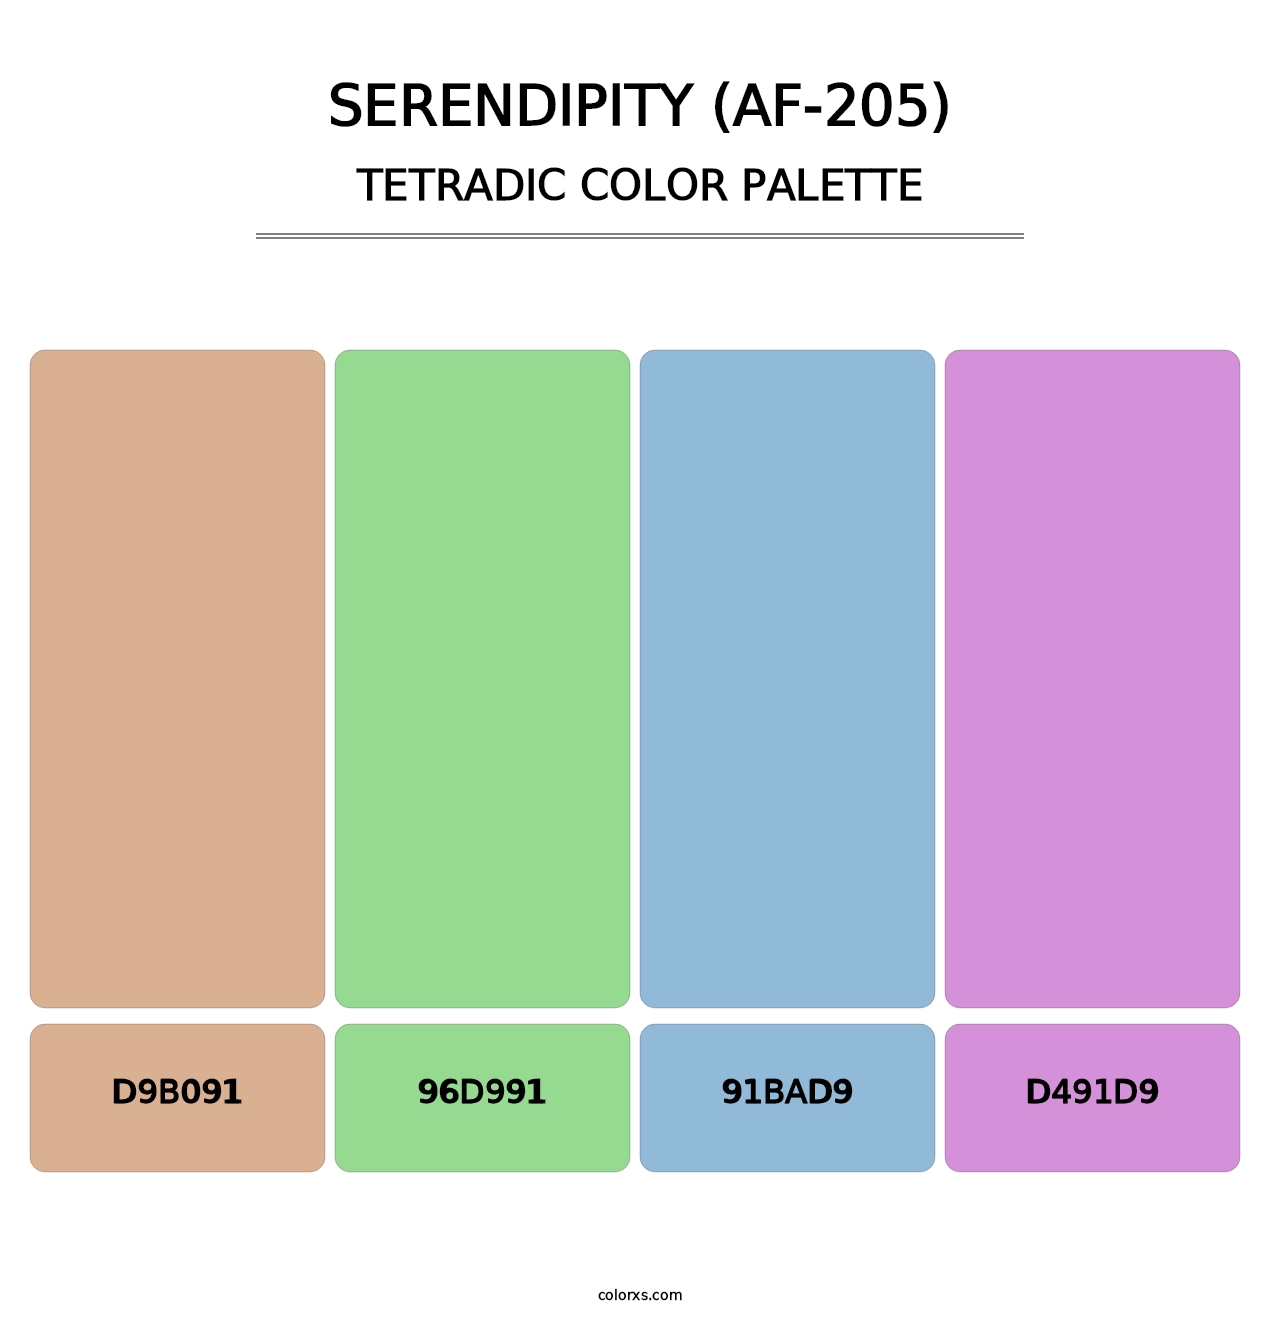 Serendipity (AF-205) - Tetradic Color Palette